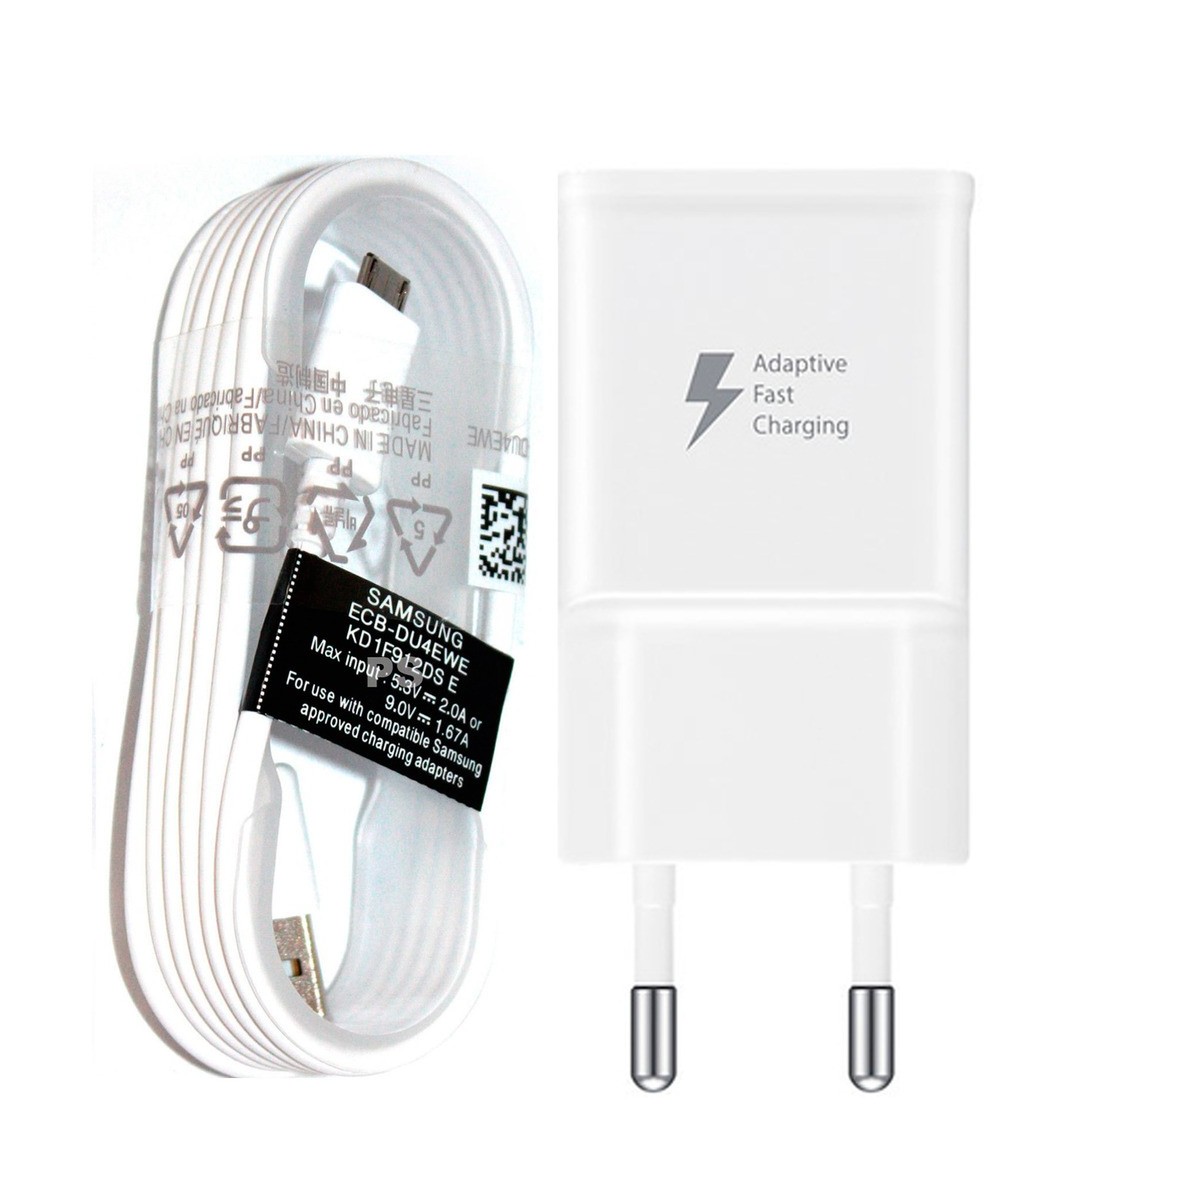 90 cm Cable de datos USB/Cargador Blanco Para Cámara Samsung Galaxy 2 EK-GC200 